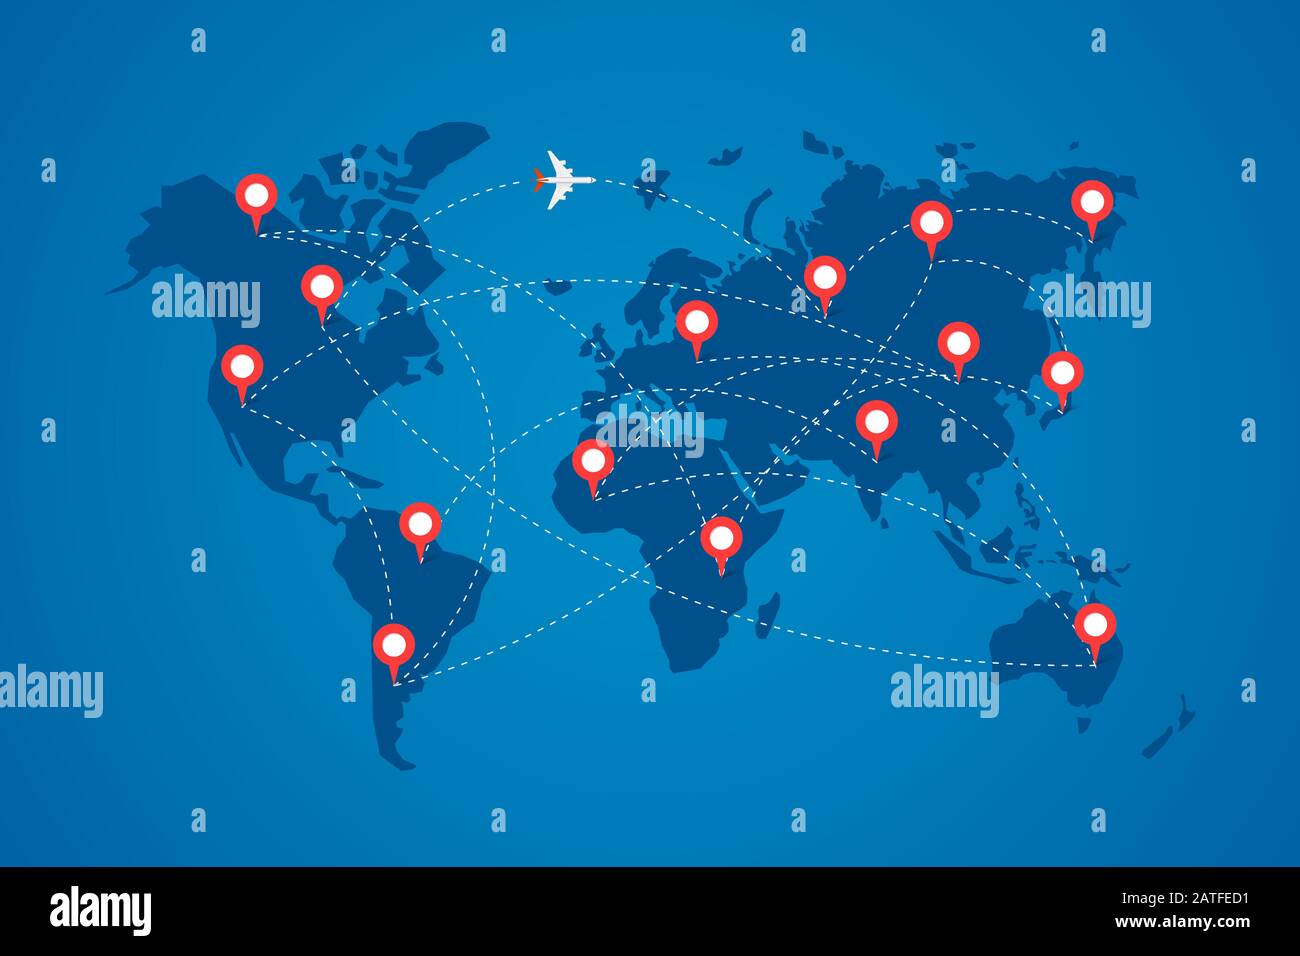 Weltkarte mit Zielmarkierungsstiften und Flugreiserouten. Draufsicht Flugzeug mit Flugwegen zwischen Kontinenten Vektor blau eps-Abbildung Stock Vektor